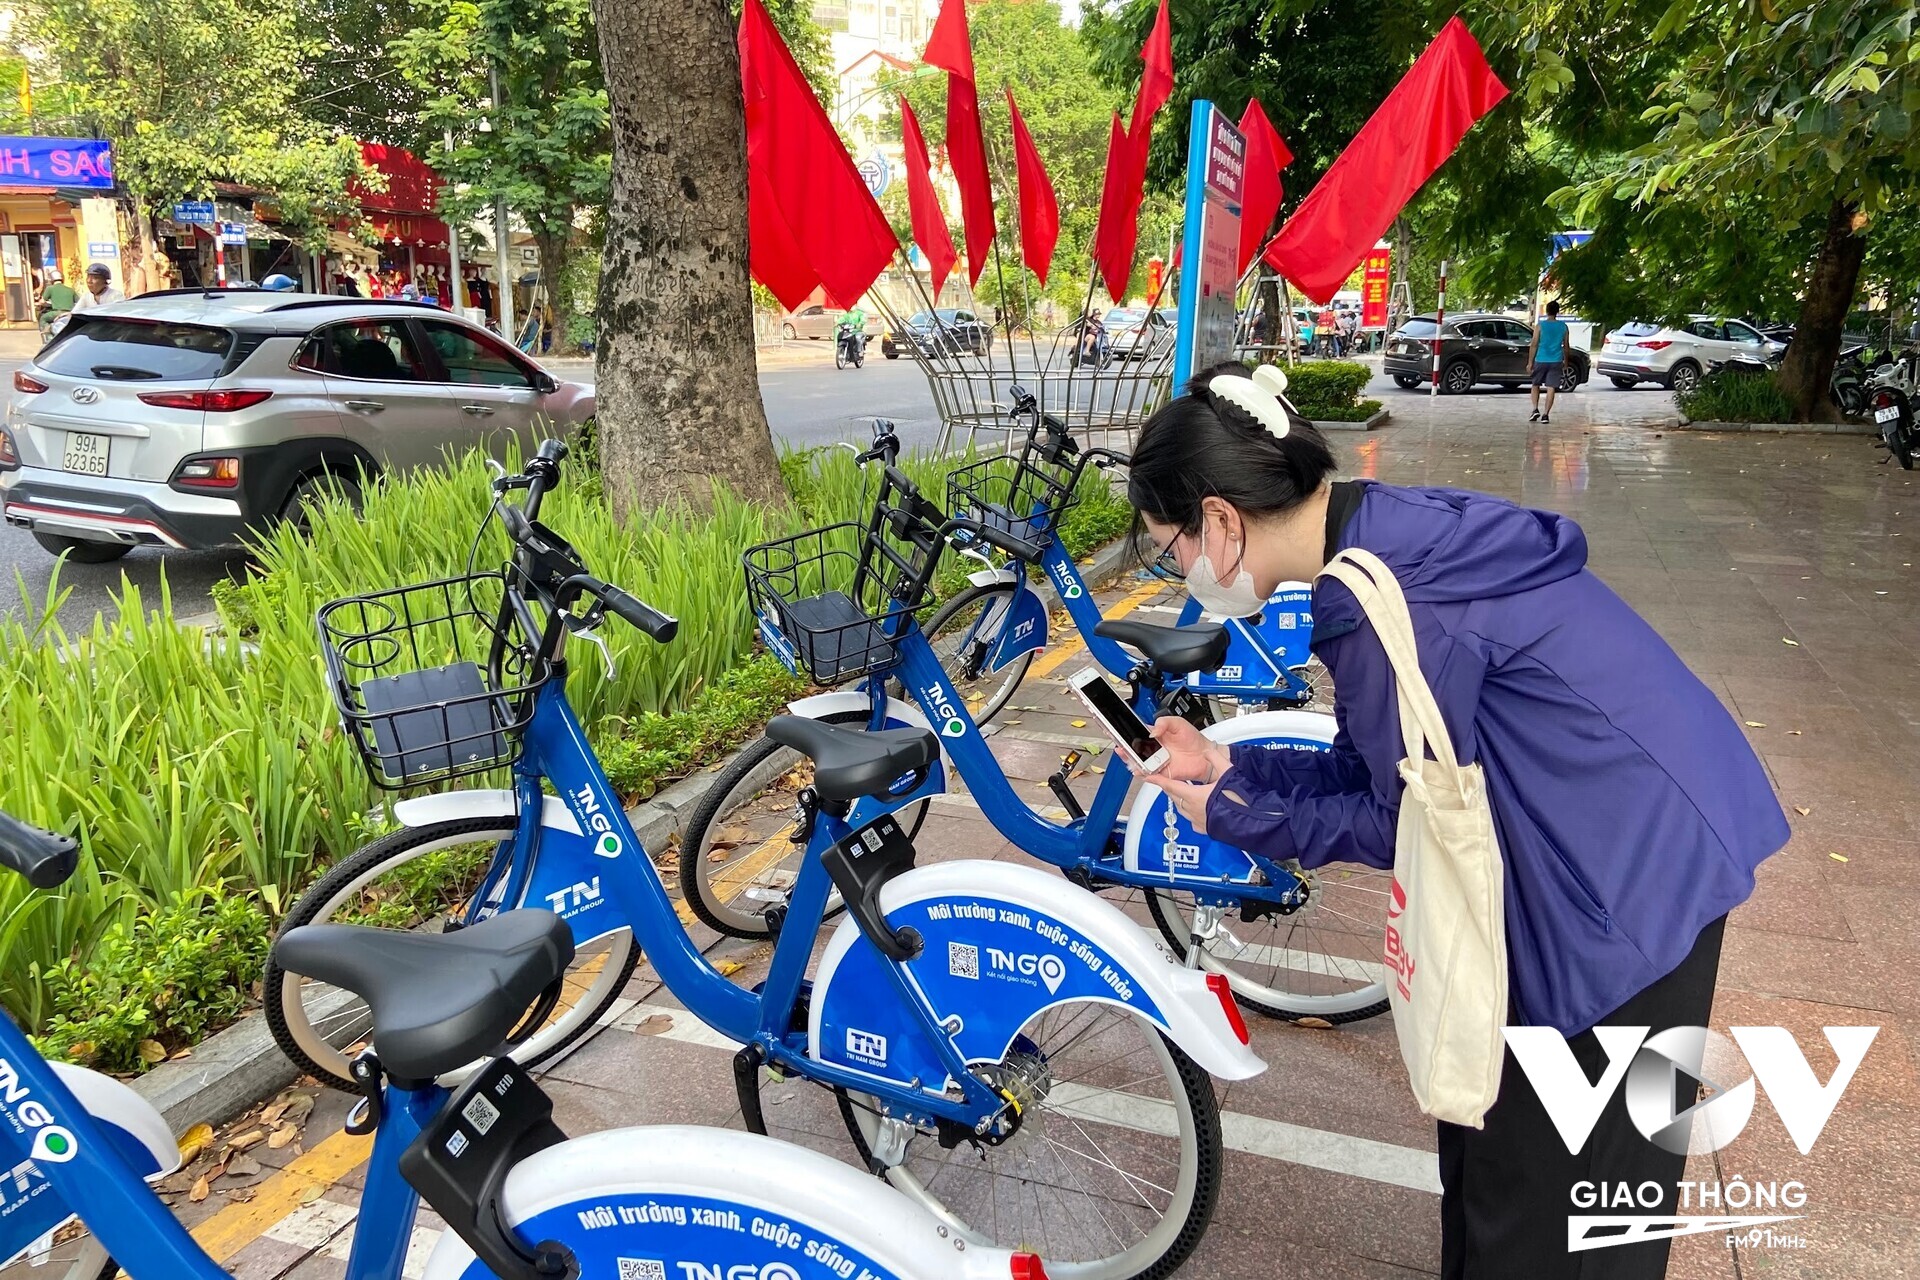 Bạn Ngọc Anh (Đống Đa, Hà Nội) thích thú trải nghiệm dịch vụ xe đạp công cộng: 'Mình thấy khá dễ sử dụng, cũng không cần phải thao tác quá nhiều sau lần đầu sử dụng. Đây cũng là lần thứ ba mình sử dụng dịch vụ này rồi'.